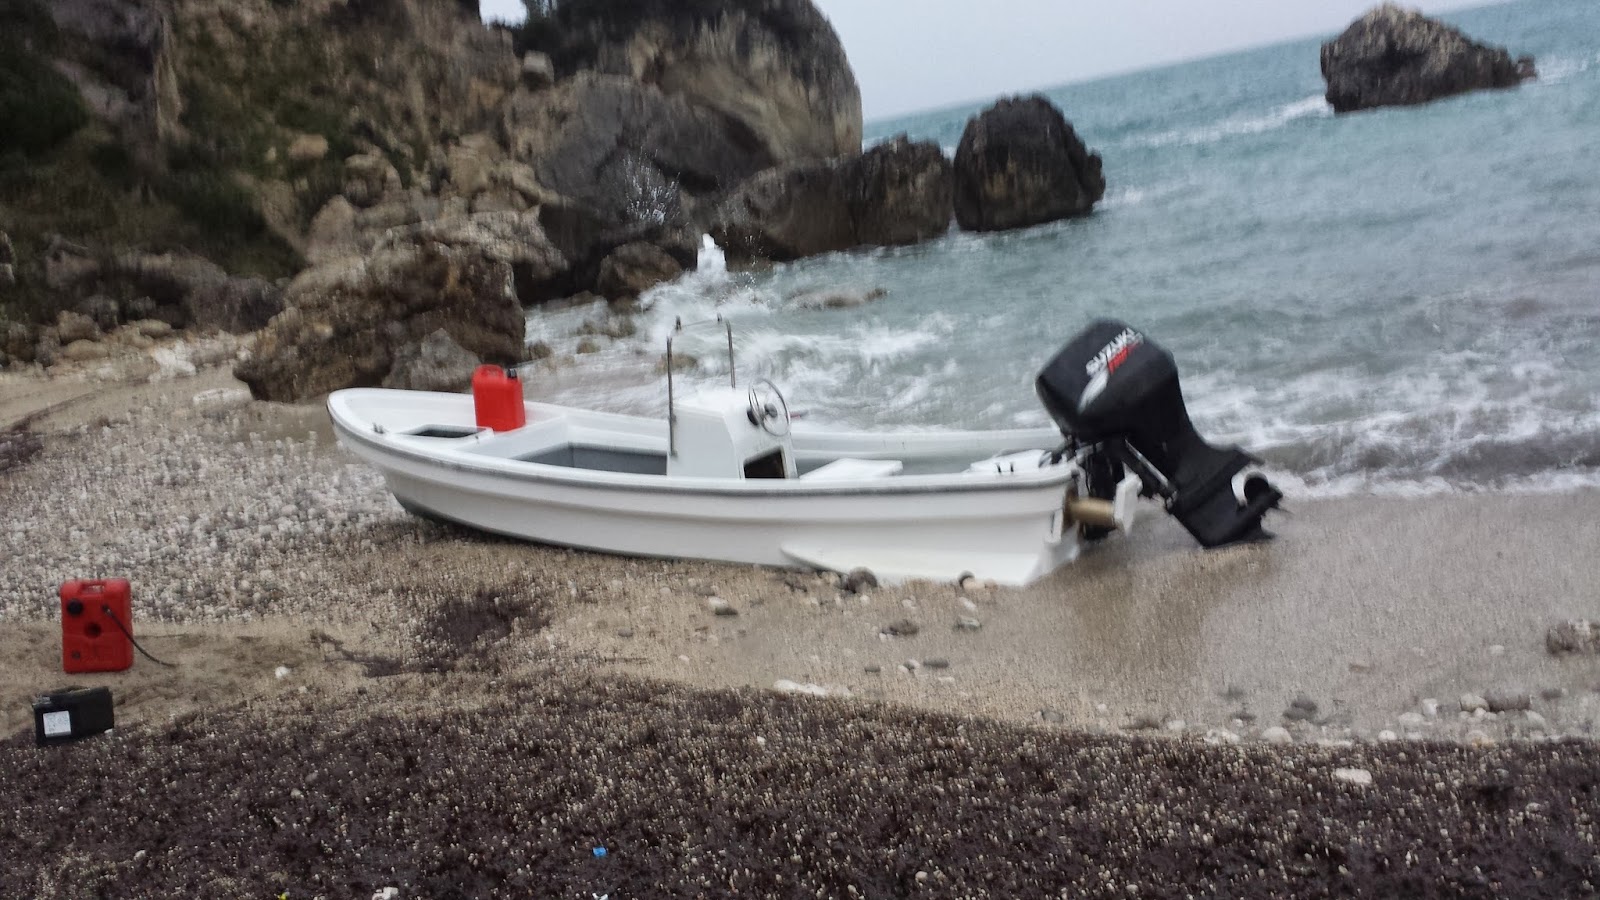  43χρονος πίσω απο τον εντοπισμό ναρκωτικών σε εγκαταλελειμμένο σκάφος επί της ακτής στην παραλία «ΠΙΣΩ ΚΡΥΟΝΕΡΙ» Πάργας την 24/01/14.